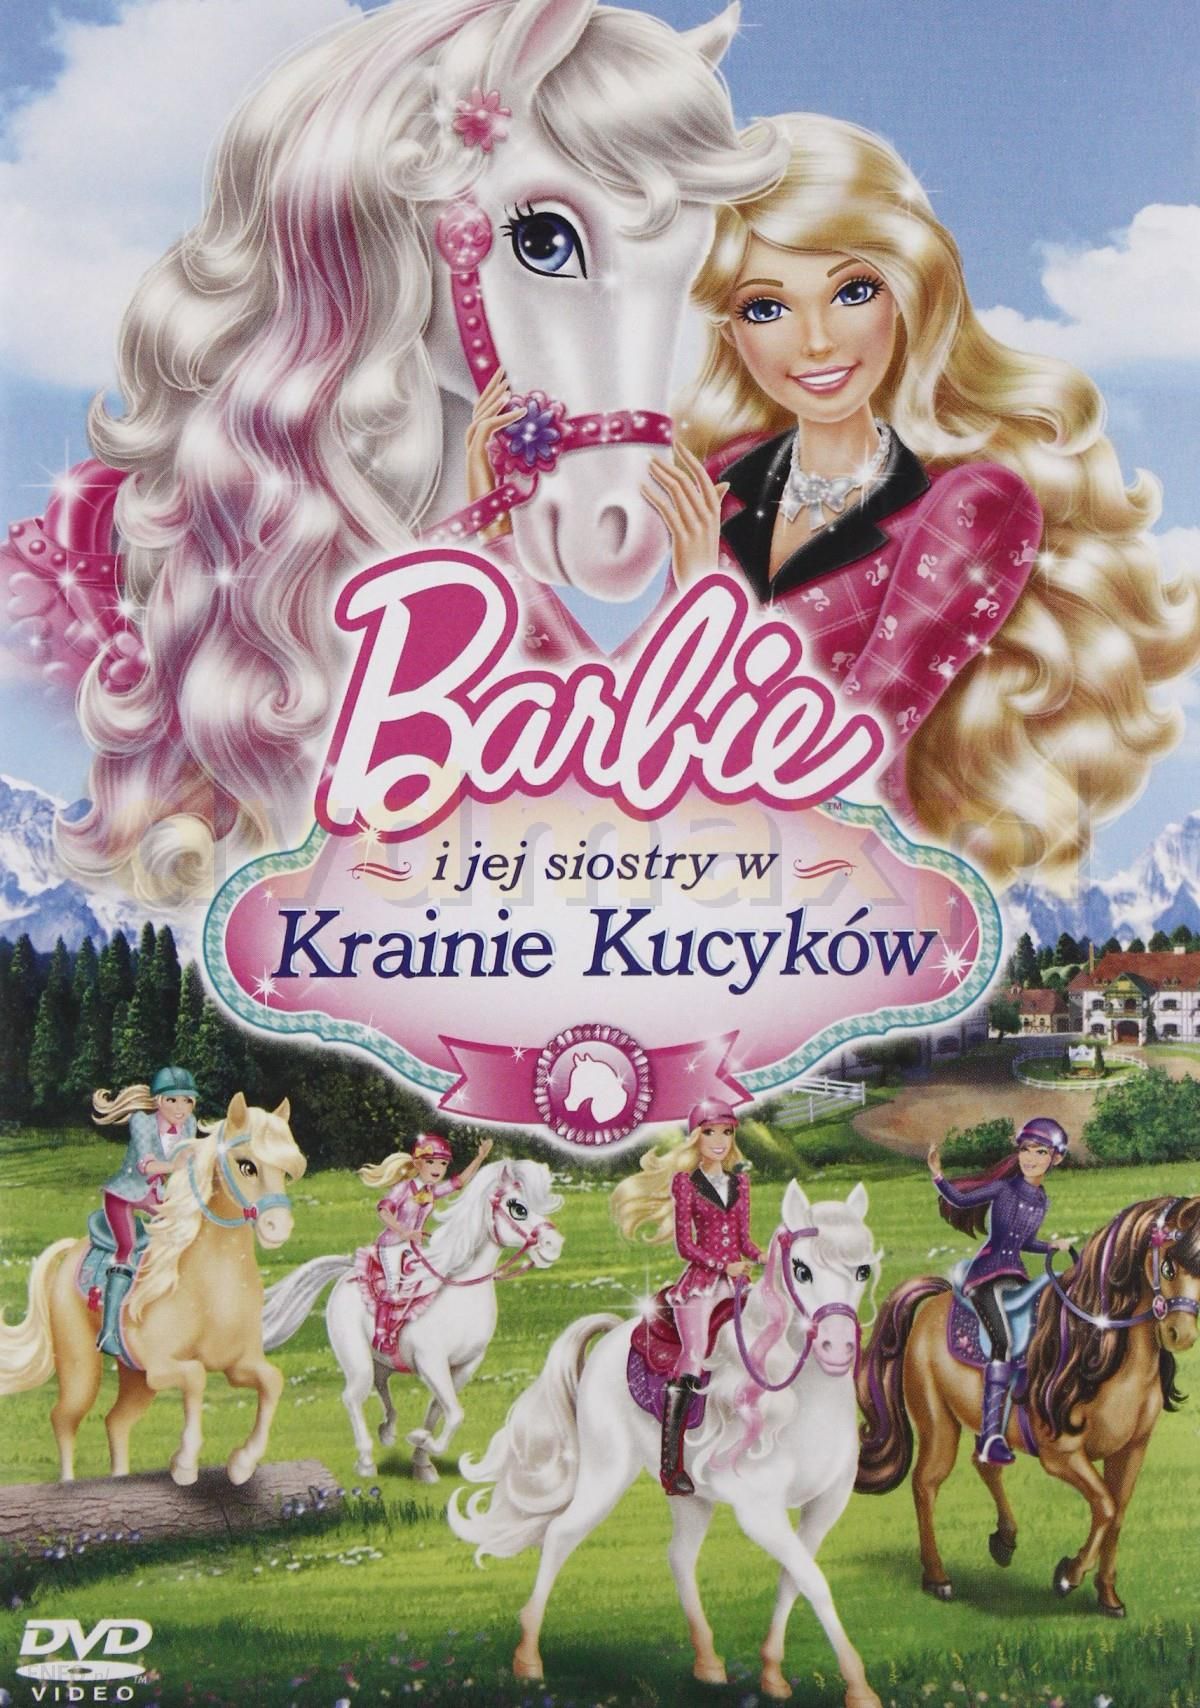 Film DVD I Siostry W Krainie (DVD) - Ceny i - Ceneo.pl